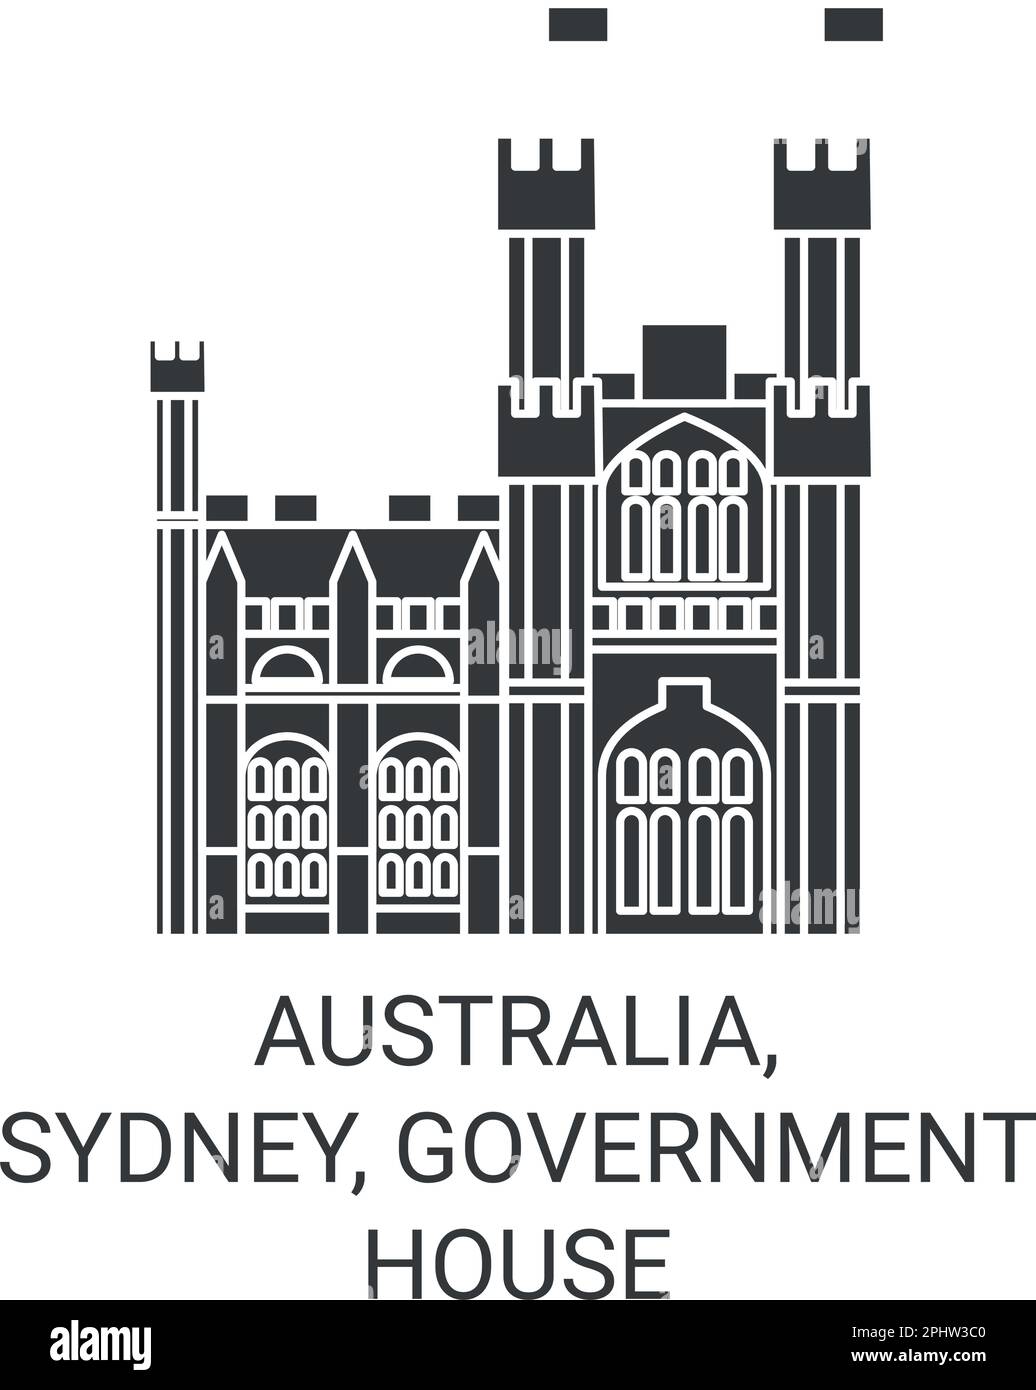 Australia, Sydney, casa de gobierno ilustración vectorial de referencia de viaje Ilustración del Vector